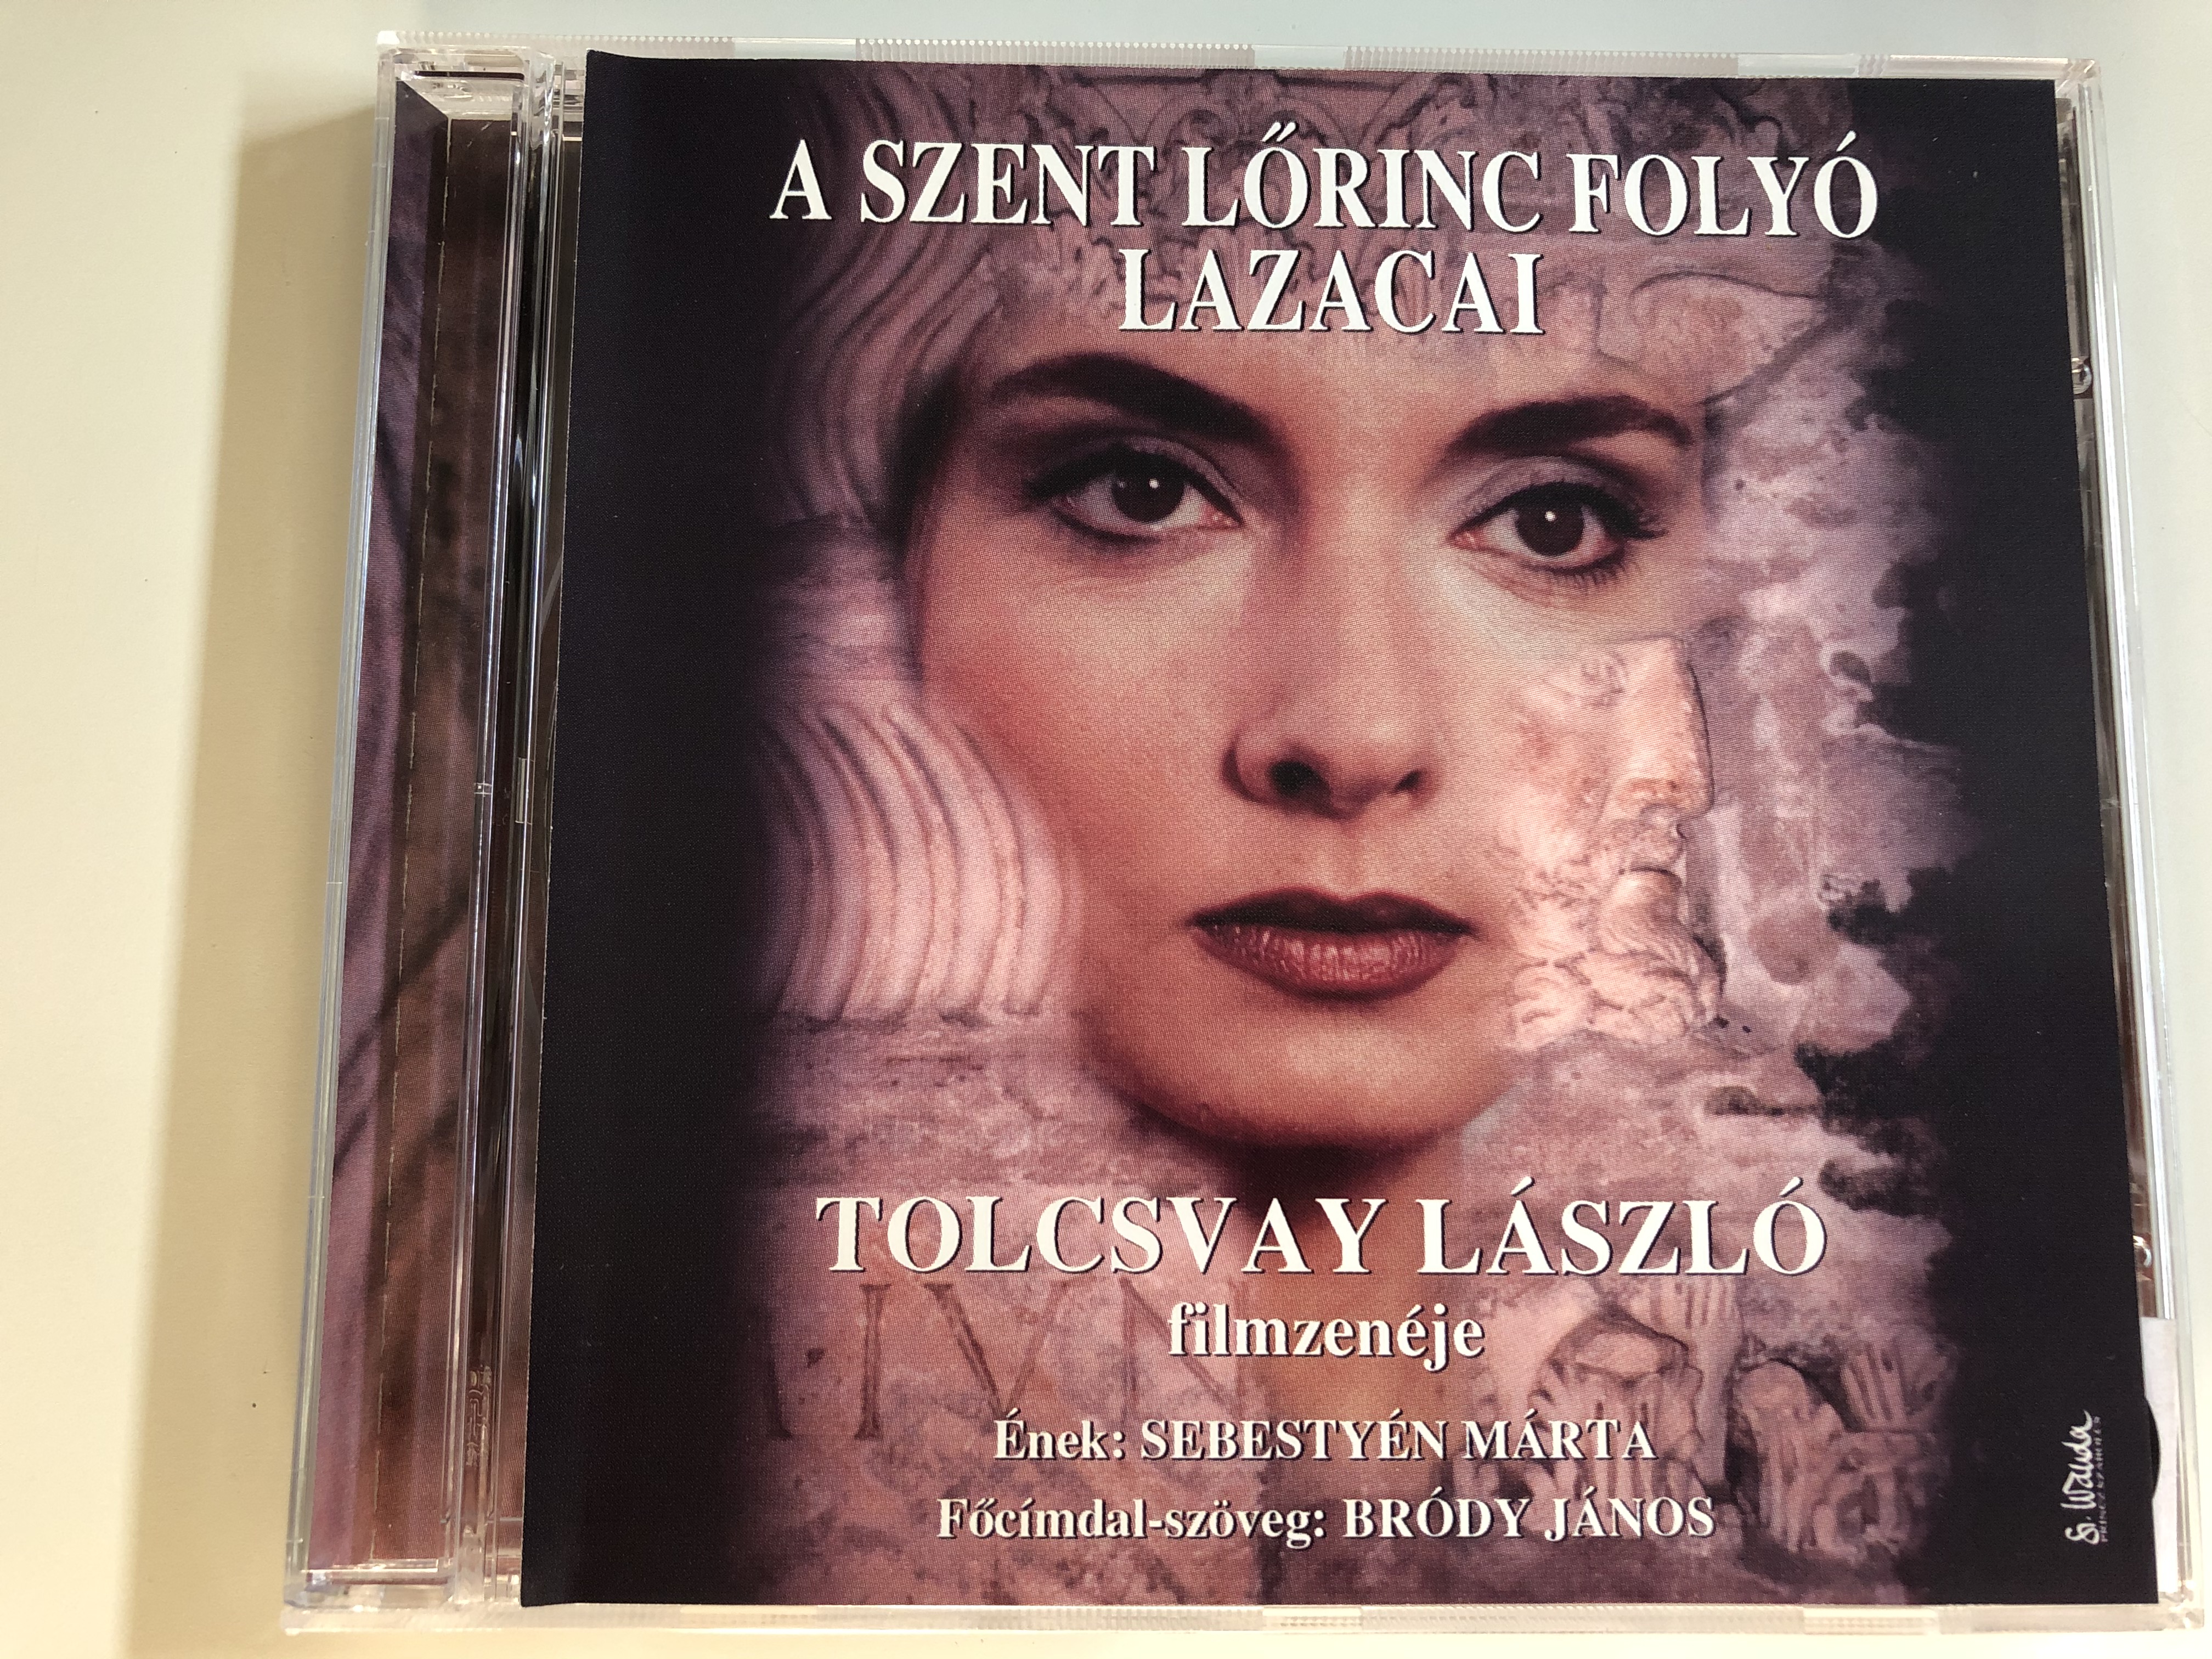 a-szent-lorinc-folyo-lazacai-tolcsvay-laszlo-filmzeneje-enek-sebestyen-marta-focimdal-szoveg-brody-janos-audio-cd-1-.jpg